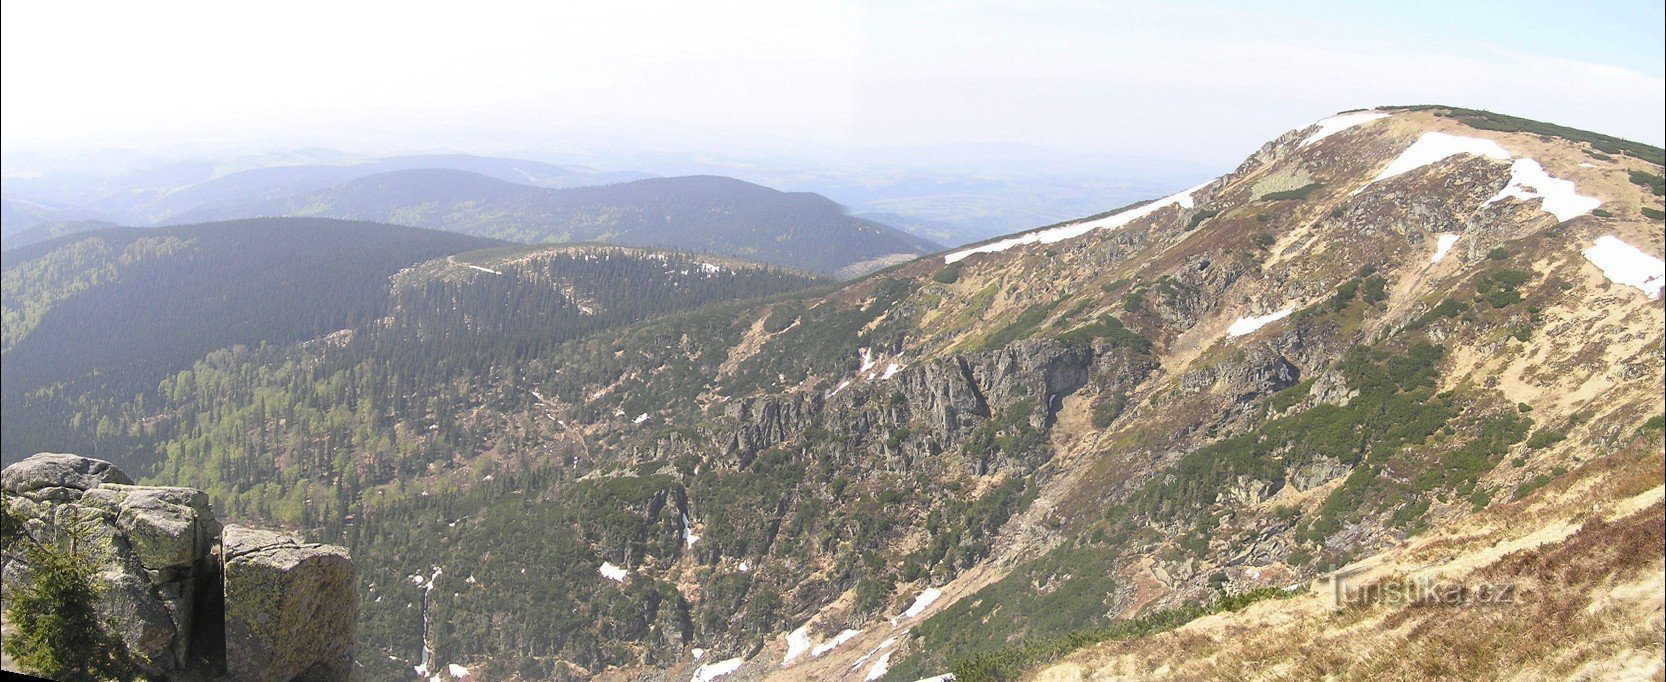 ボイラー ピット - ハラッハ石からの眺め (2009 年 XNUMX 月)